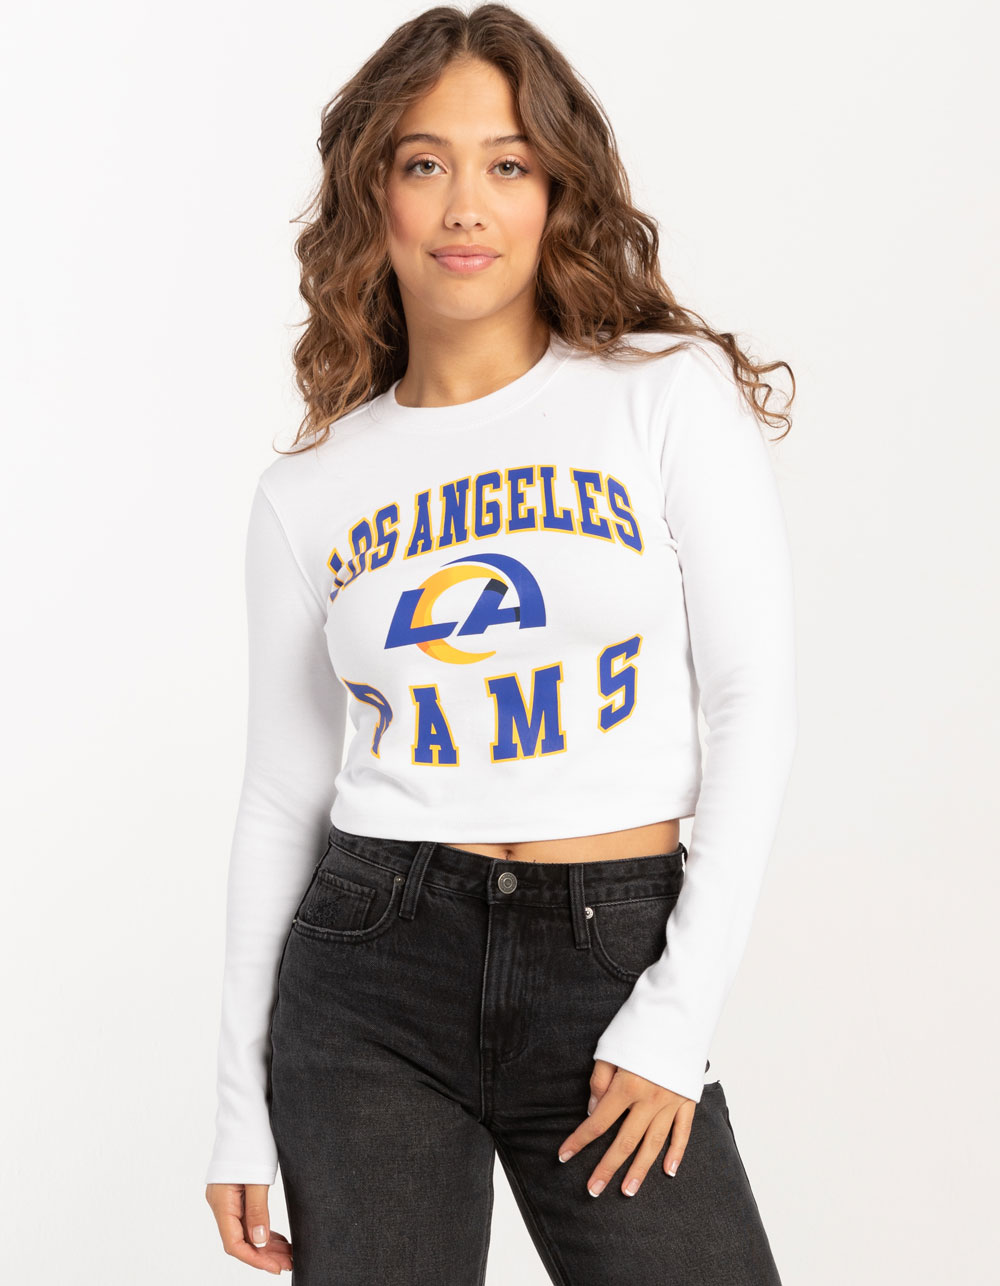 NFL Los Angeles Rams Women's Fashion T-Shirt - XL